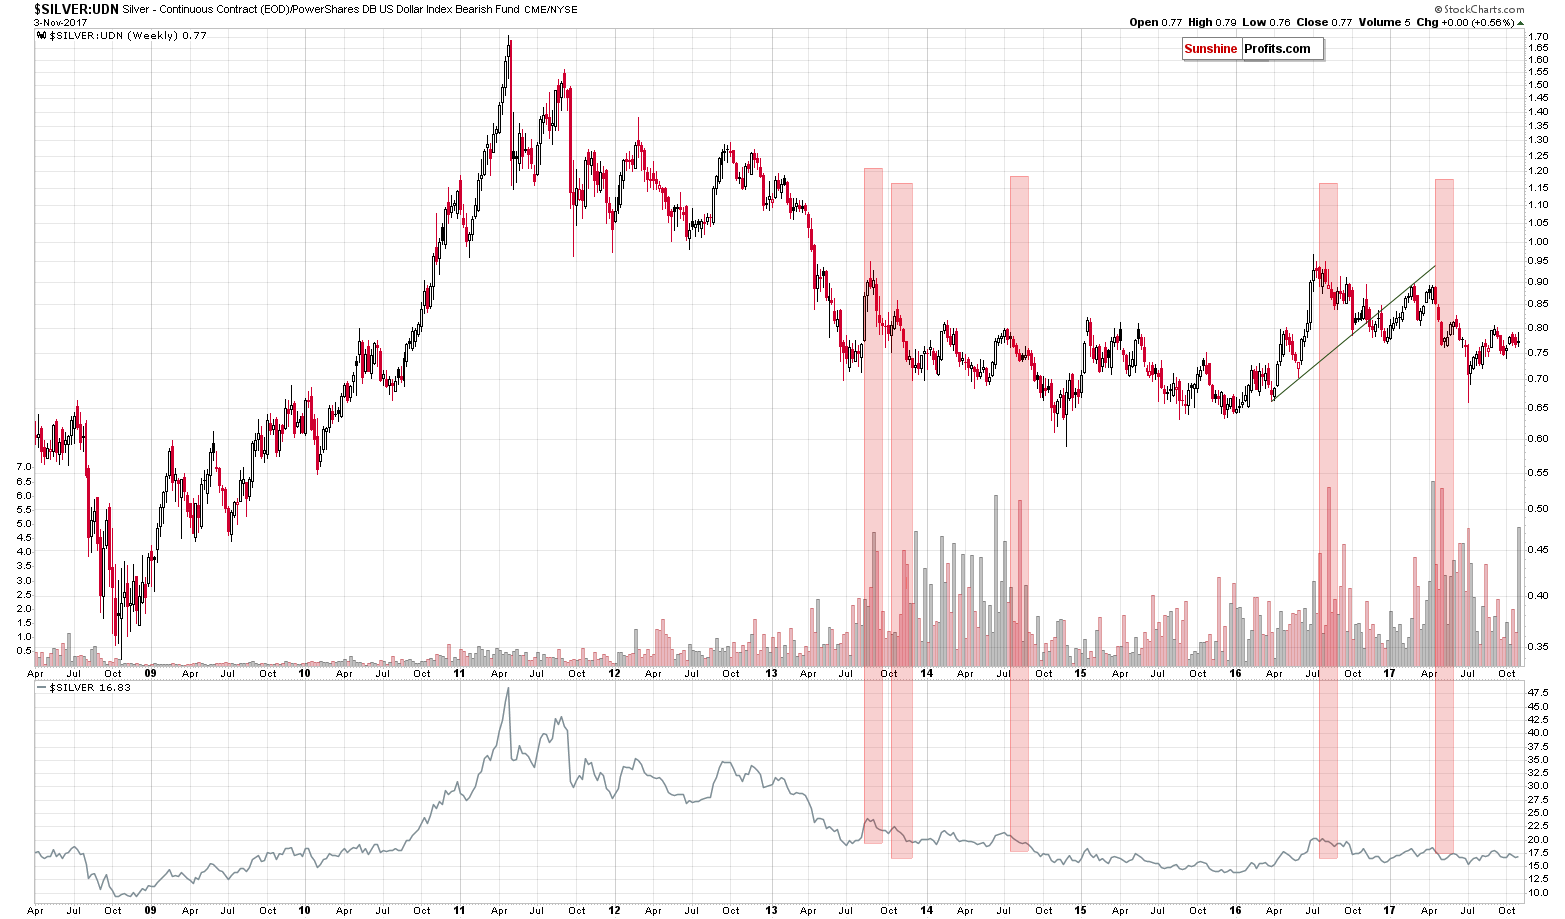 Silver:USD - Silver’s non-USD performance chart